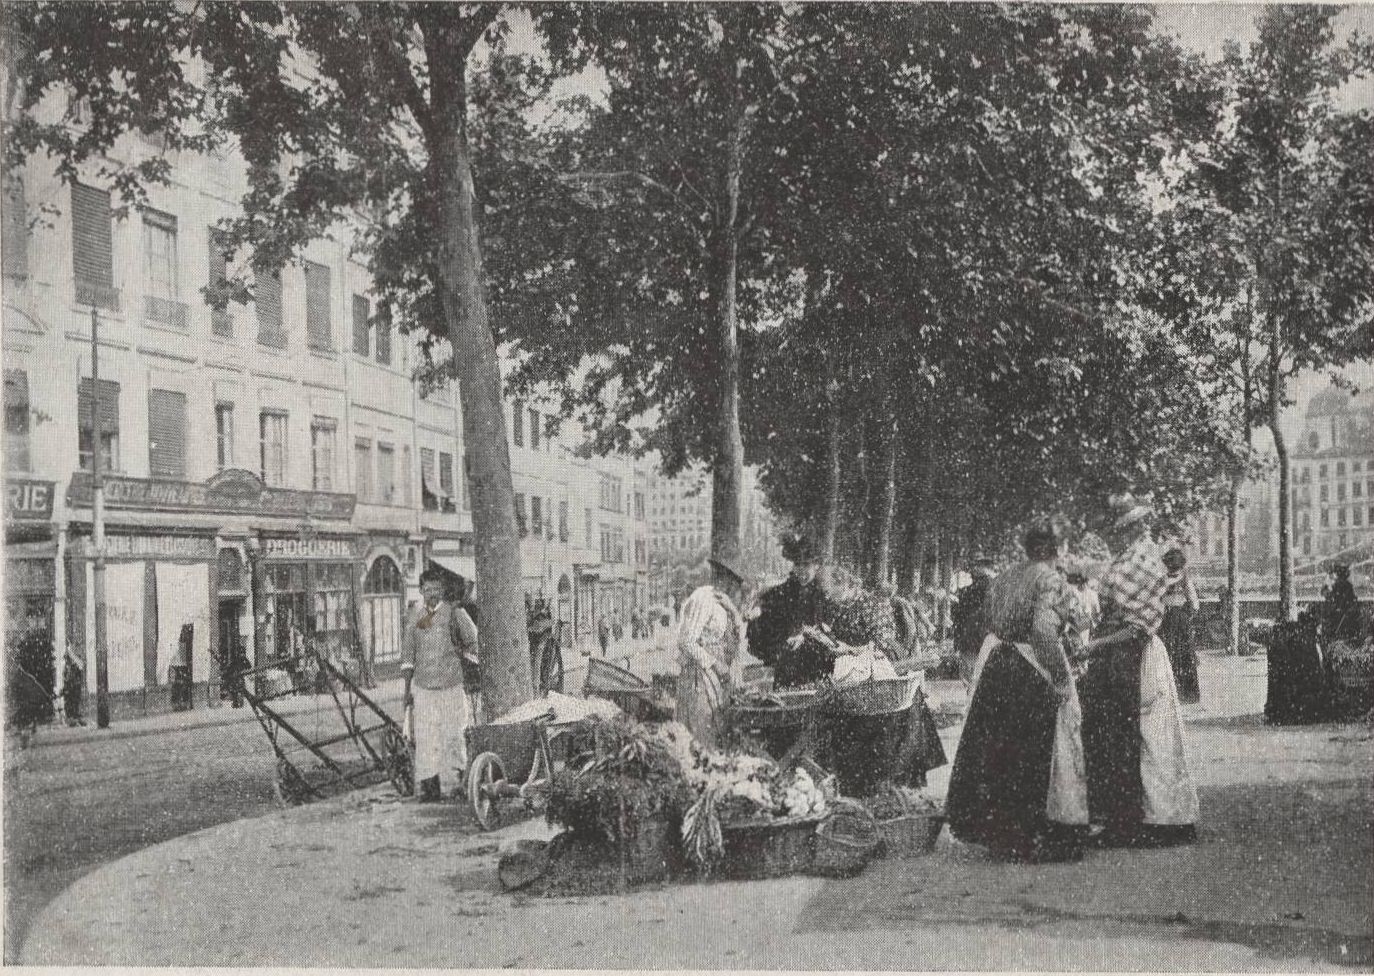 Un coin de marché sur le quai de Bondy : carte postale NB (vers 1910, cote : 4FI/4085)